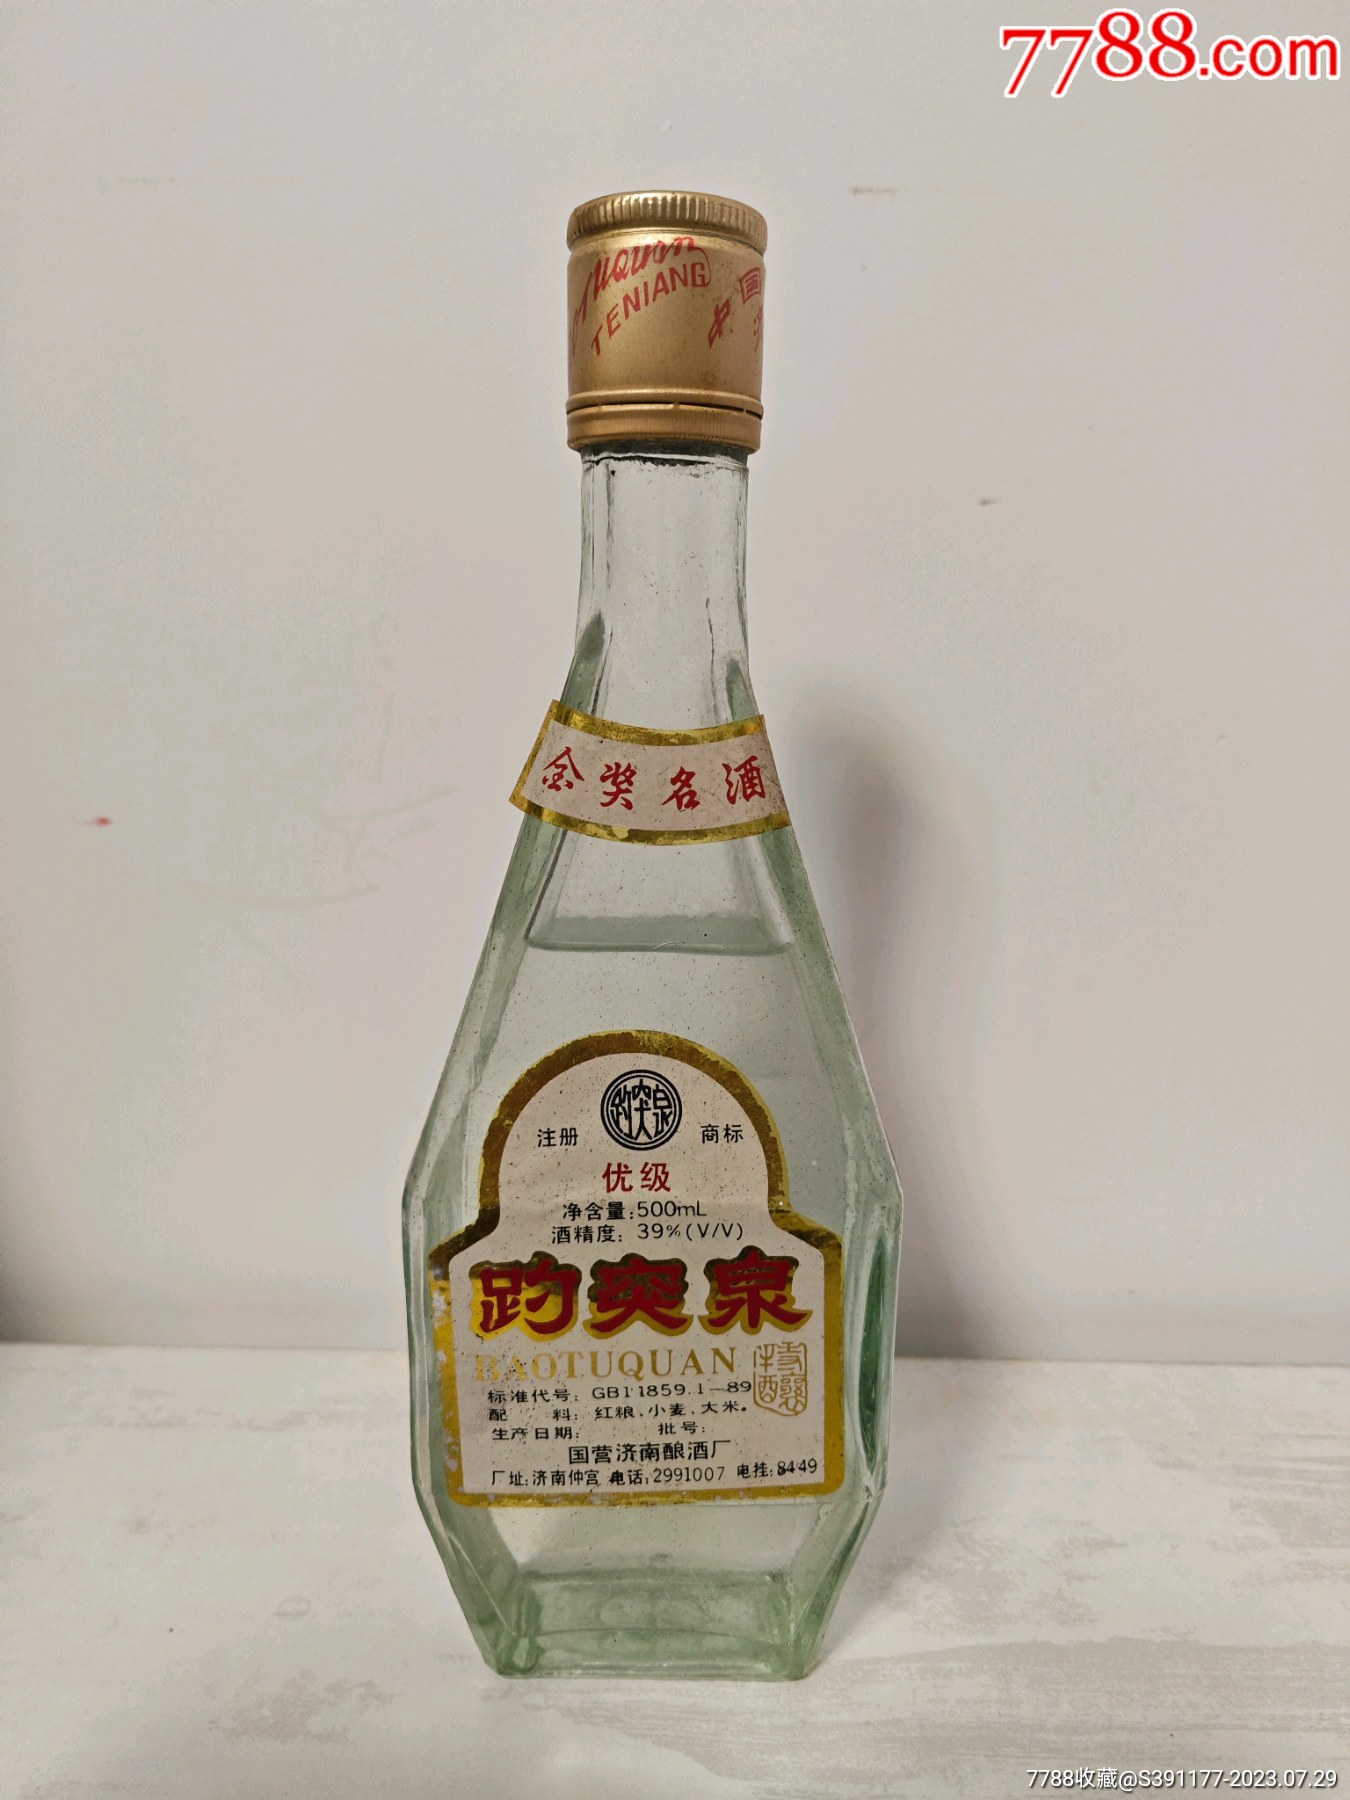 趵突泉酒业 ∣ 泉香美酒 为“影响济南”经济人物加冕